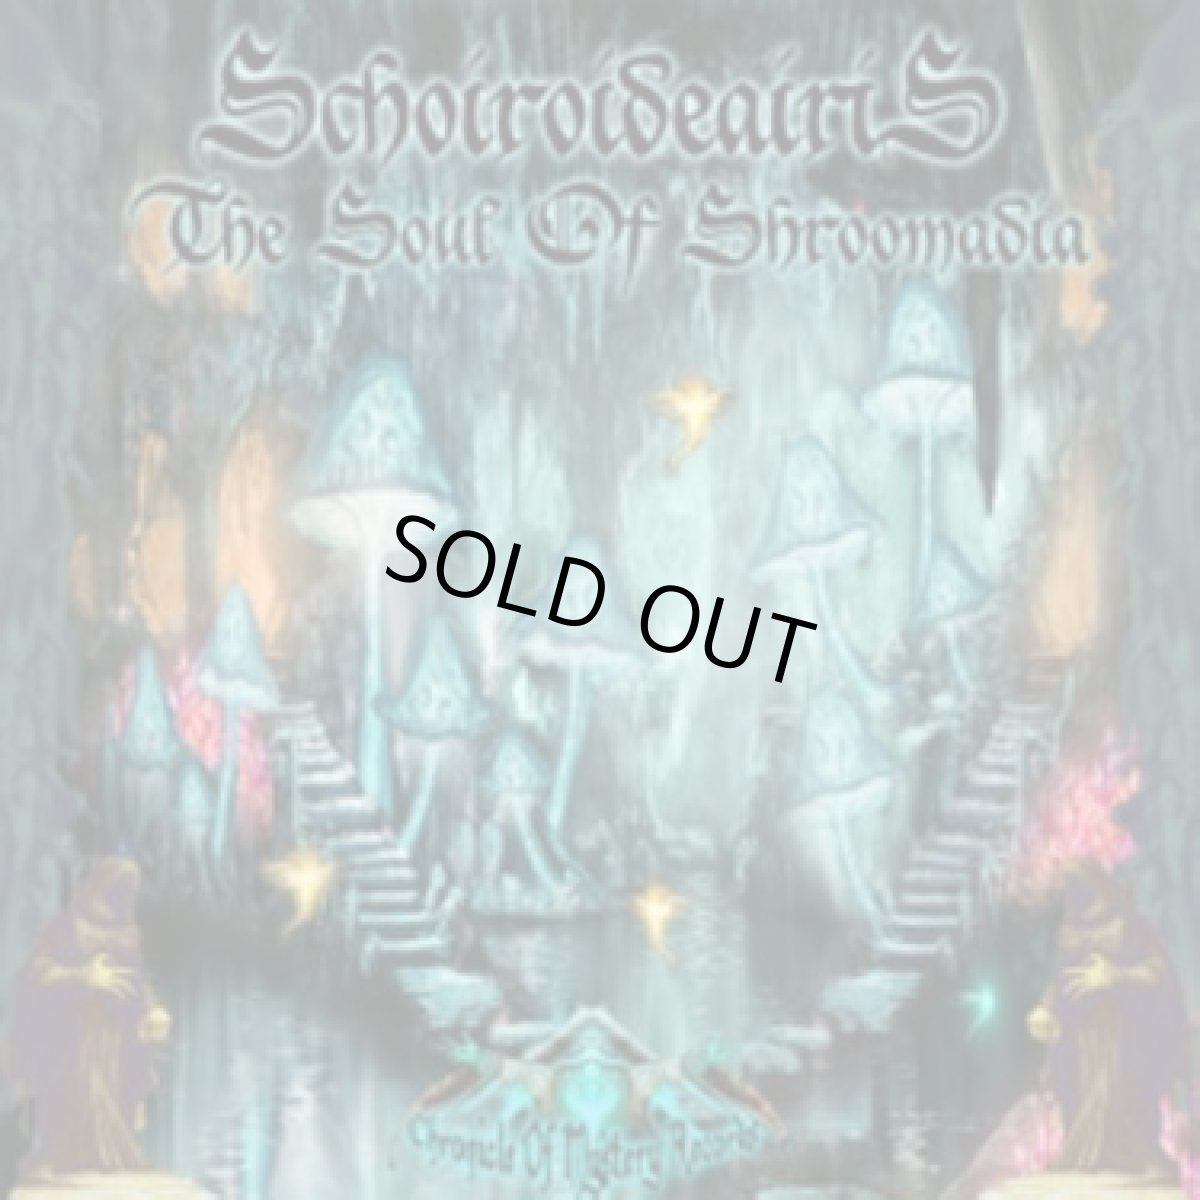 画像1: CD「Schoiroideairis / The Soul Of Shroomadia」【ダークサイケ】 (1)